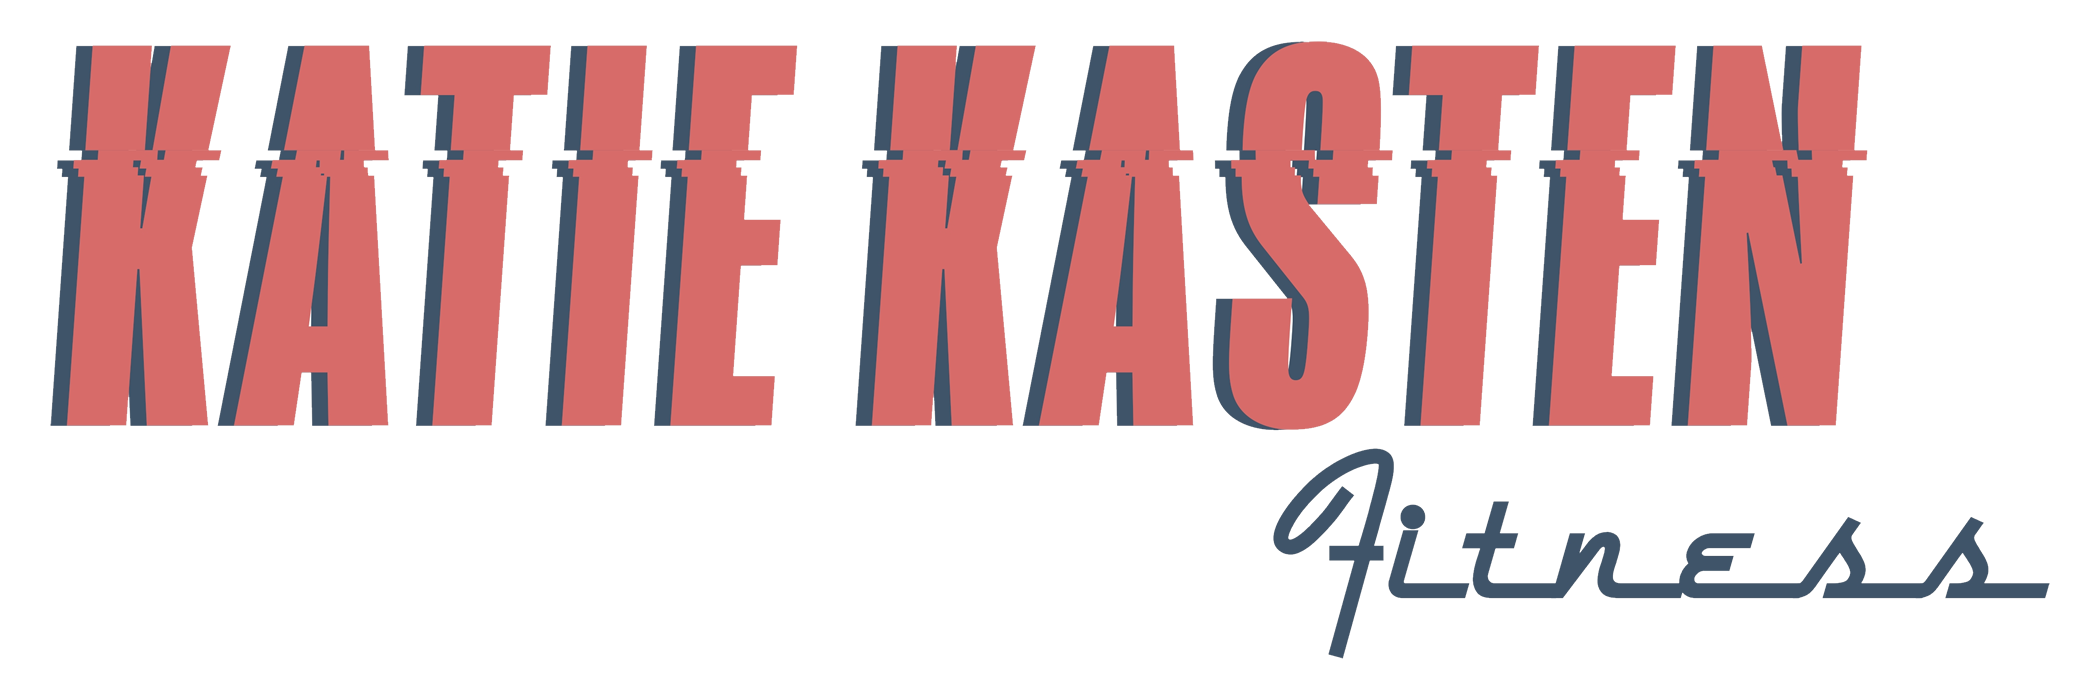 KATIE KASTEN Logo